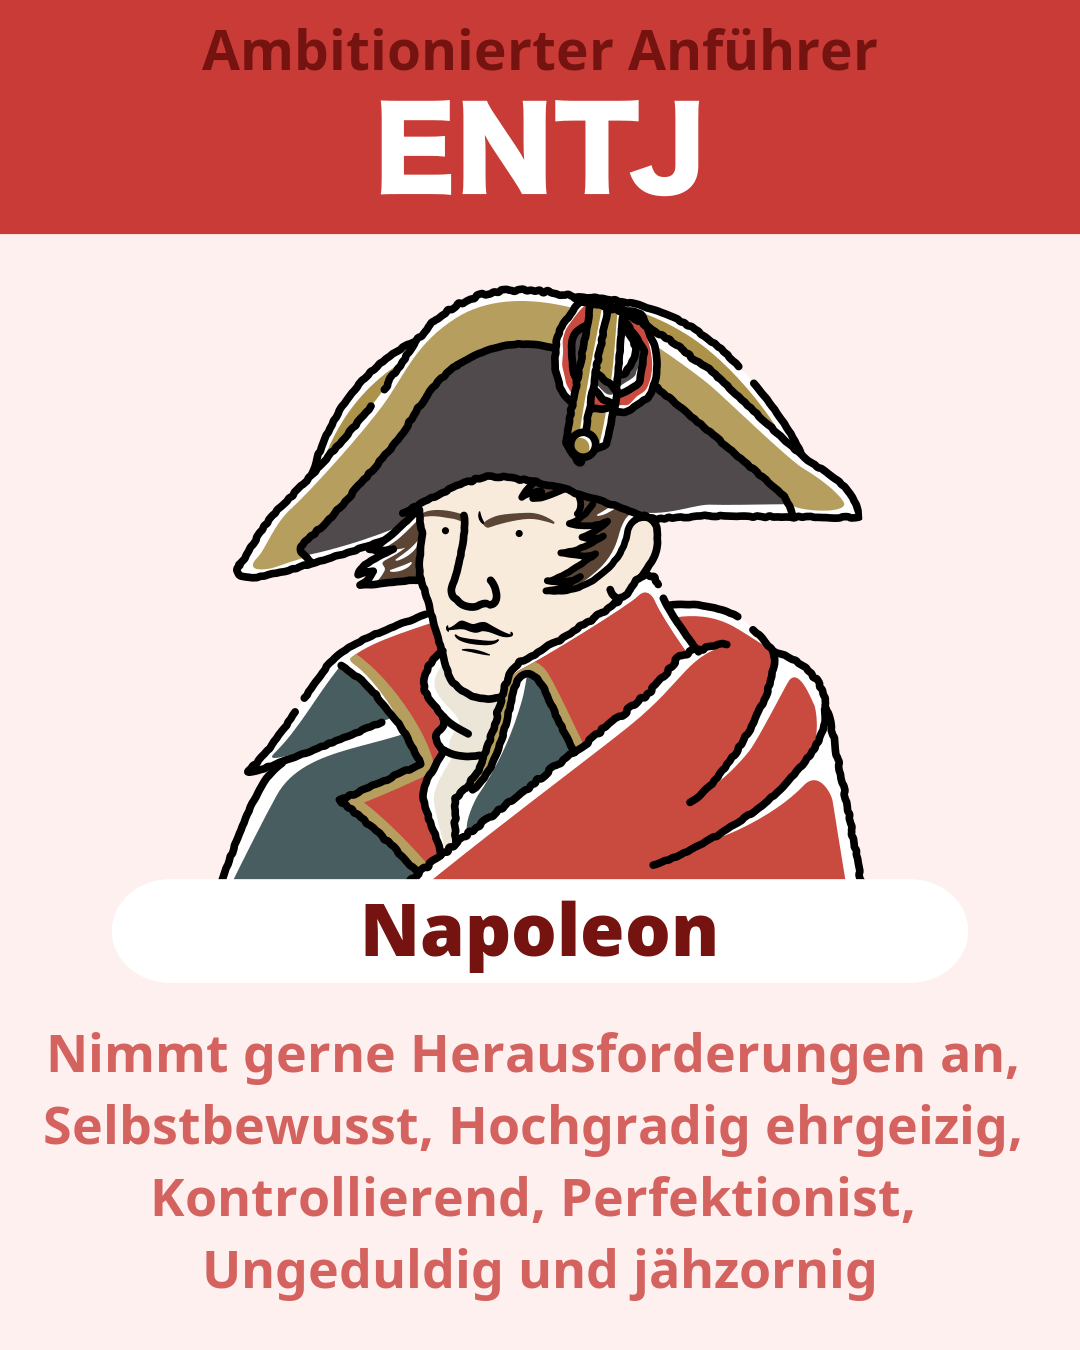 Napoleon - ENTJ